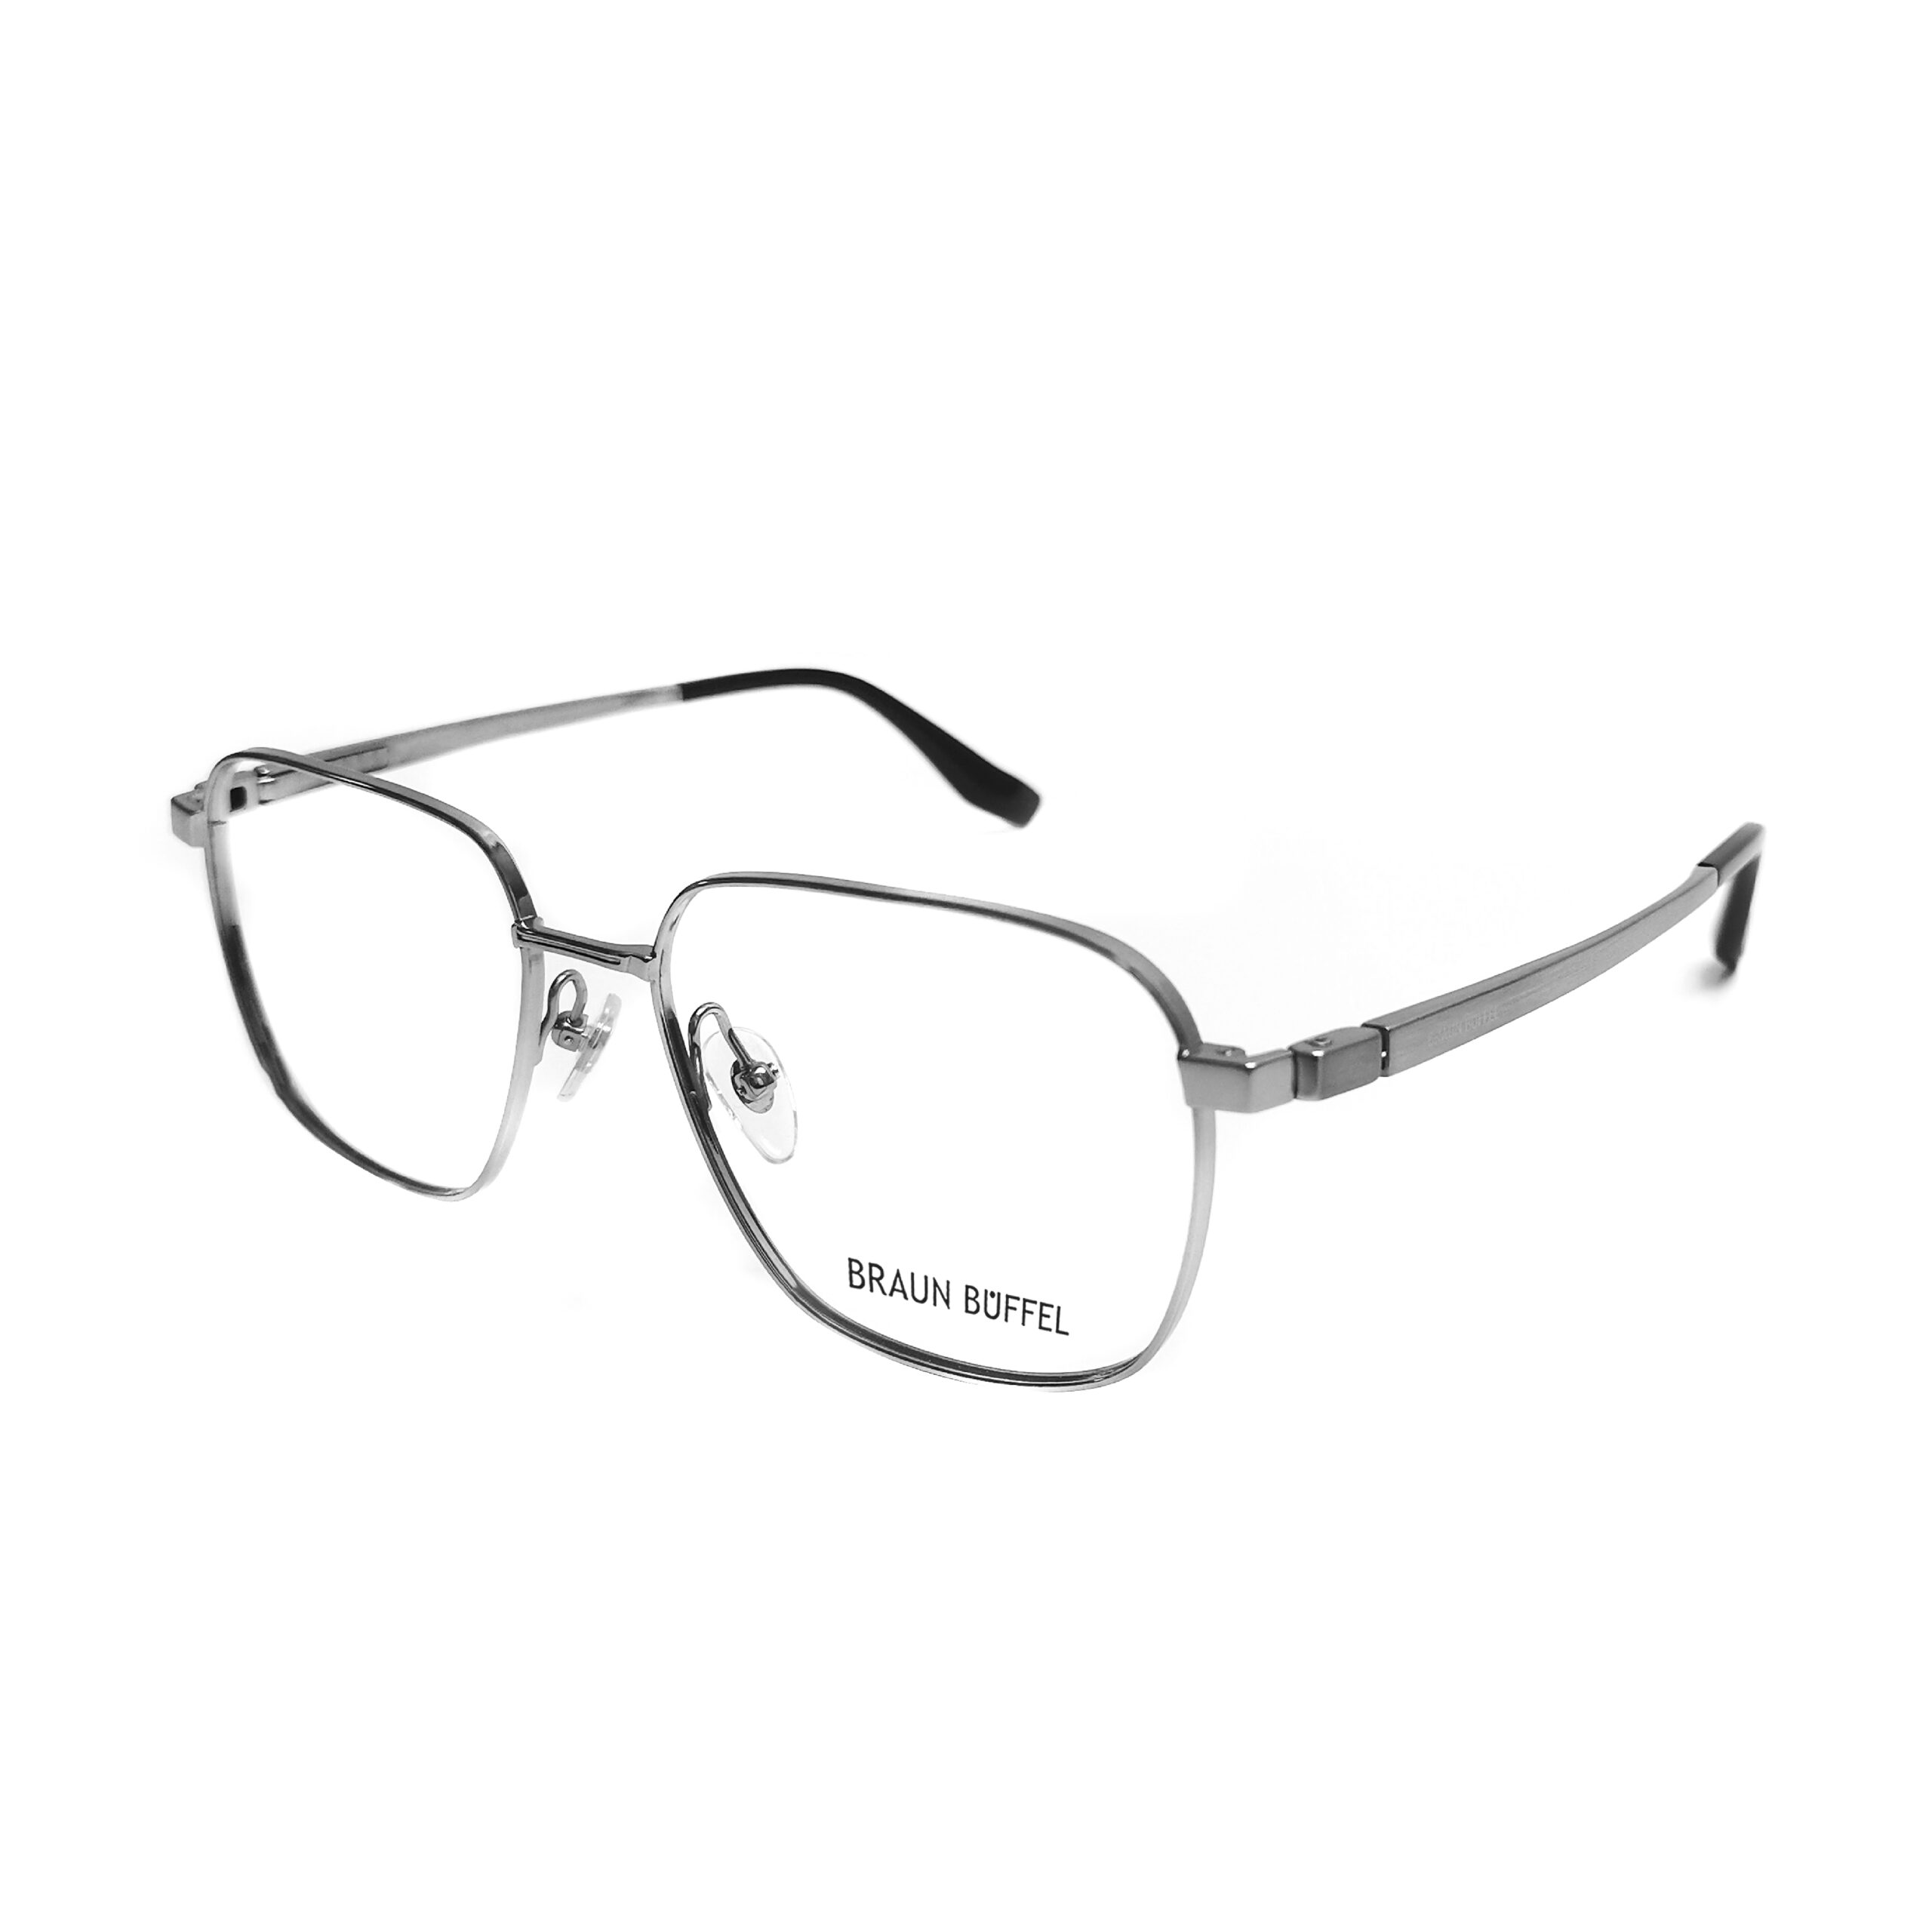 Braun Buffel BB 50006 – C4 – MOG Eyewear – Metro Optical Group